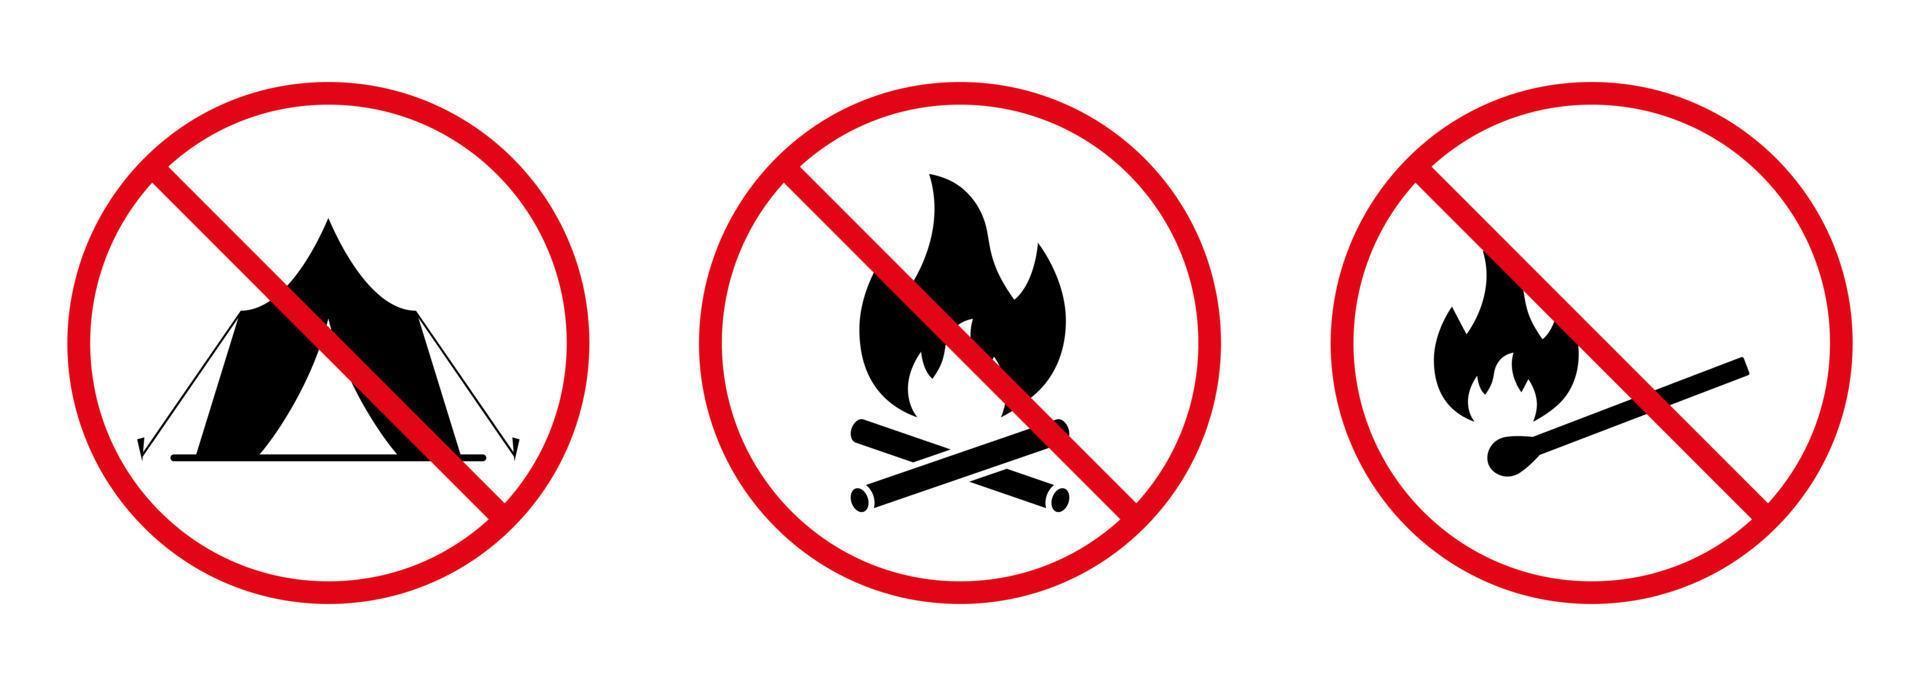 försiktighet förbud bål tändsticka svart siluett ikonuppsättning. förbjuda brandzonen för camping. piktogram för förbjudet lägerområde. trä tändsticka stick stopp symbol. ingen tillåten låga skylt. isolerade vektor illustration.